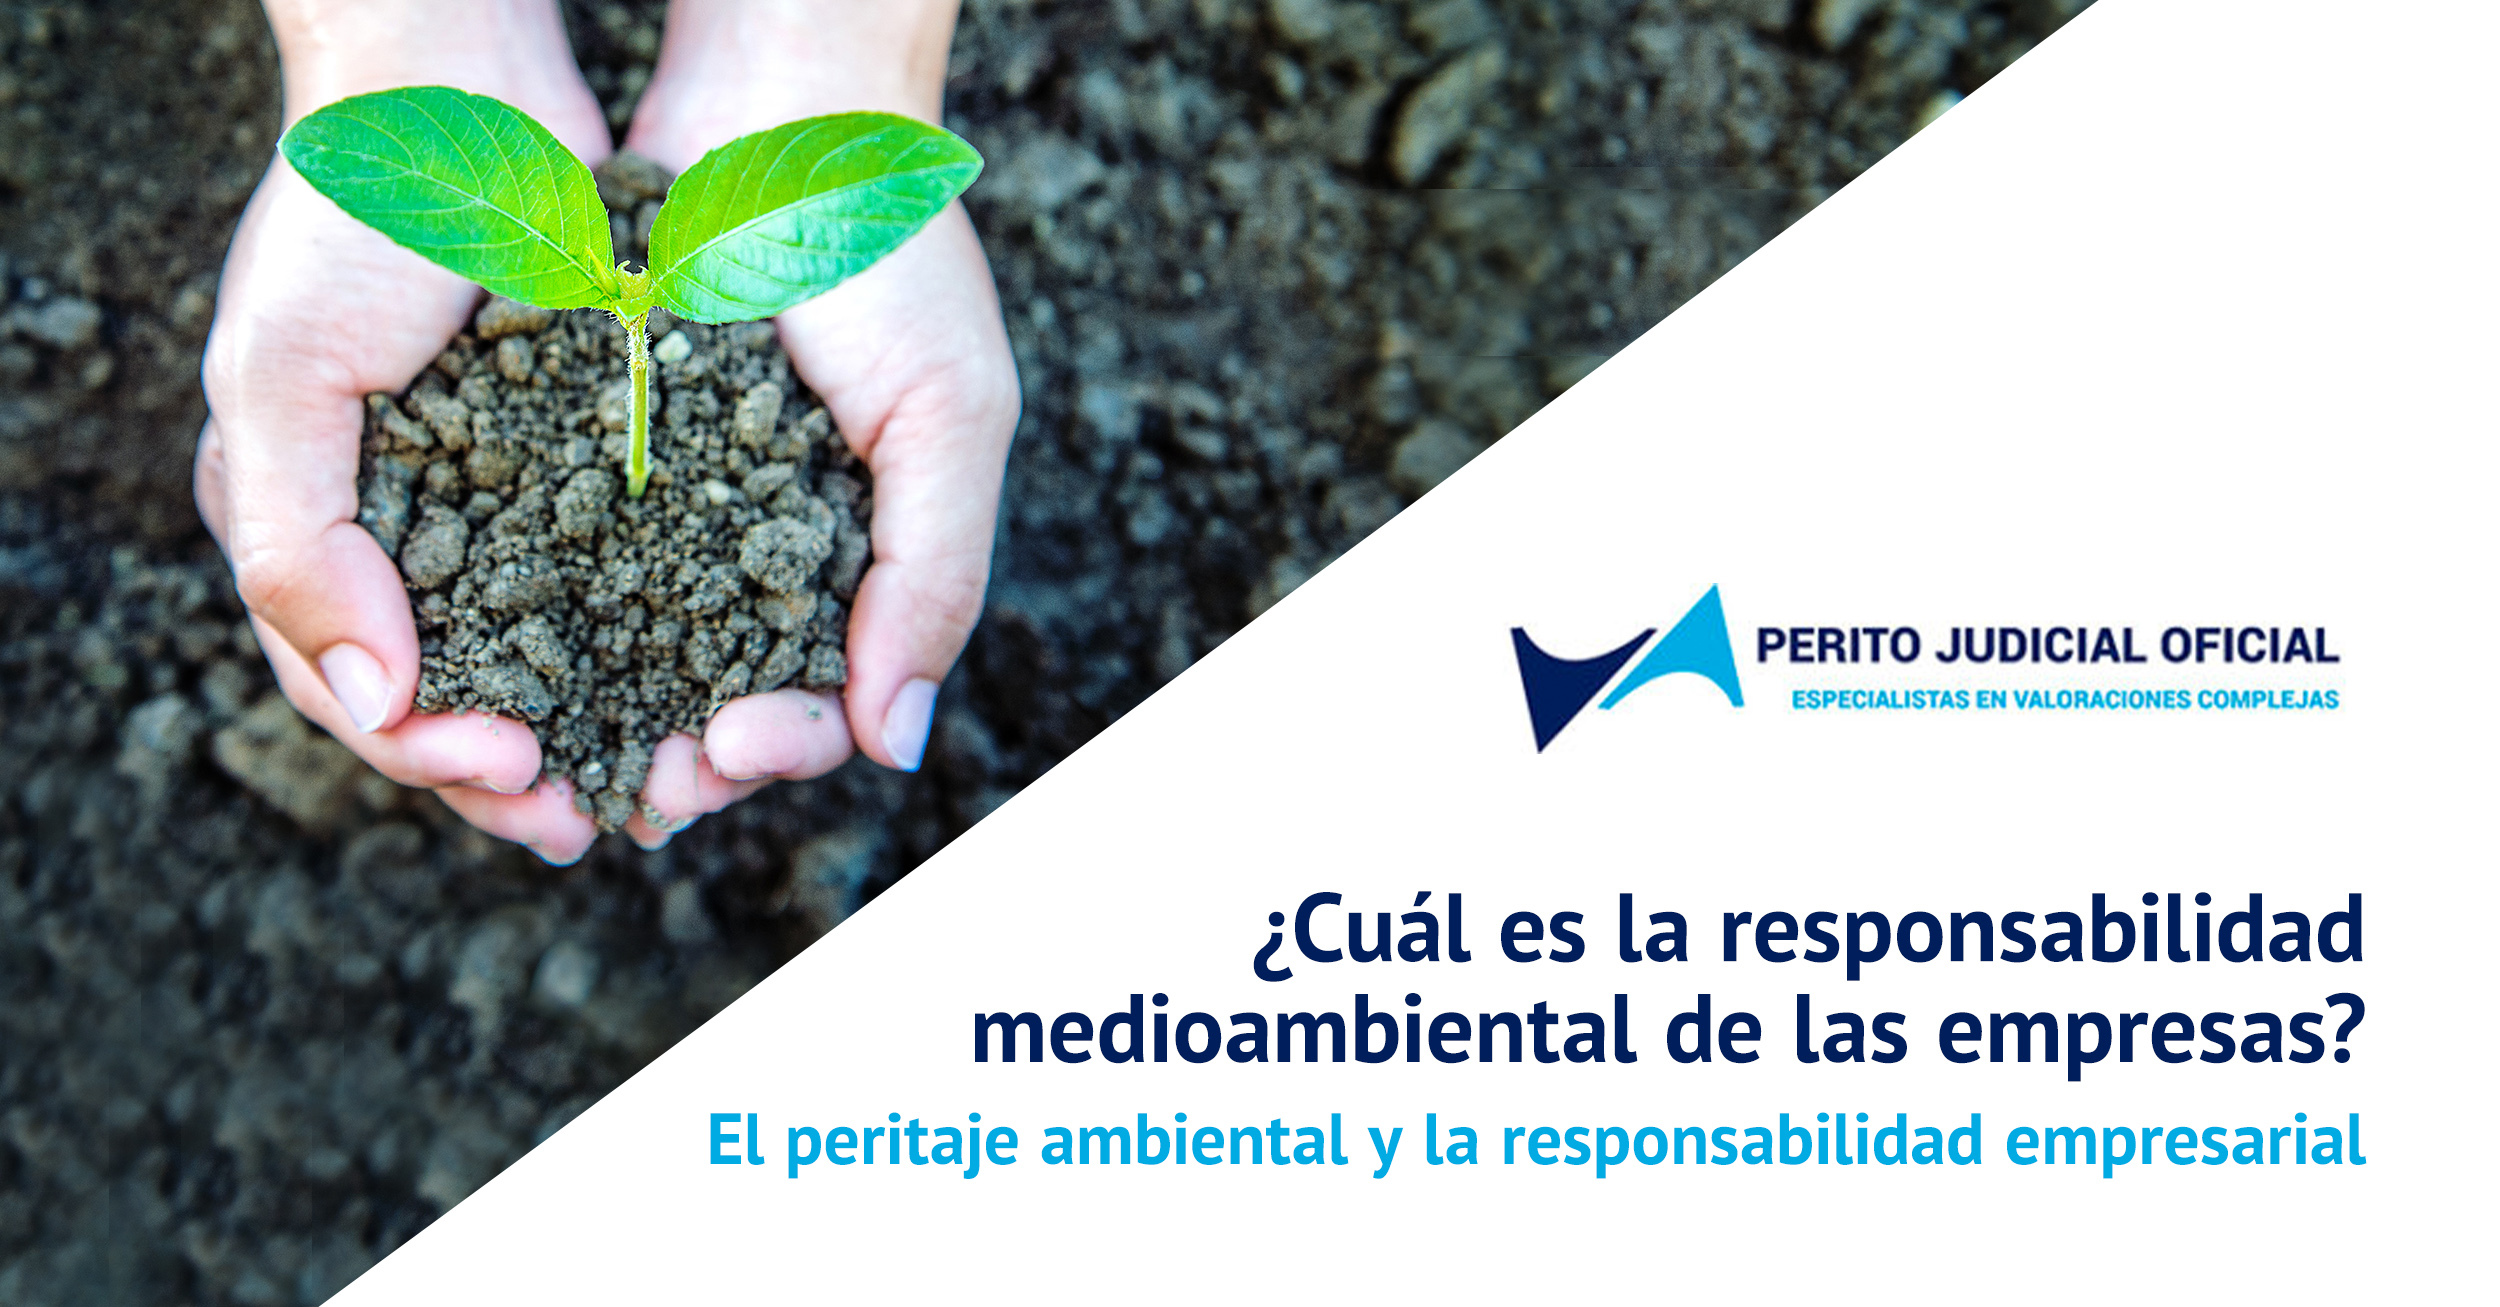 El peritaje ambiental y la responsabilidad empresarial - Perito Judicial Oficial - Peritos España - Madrid